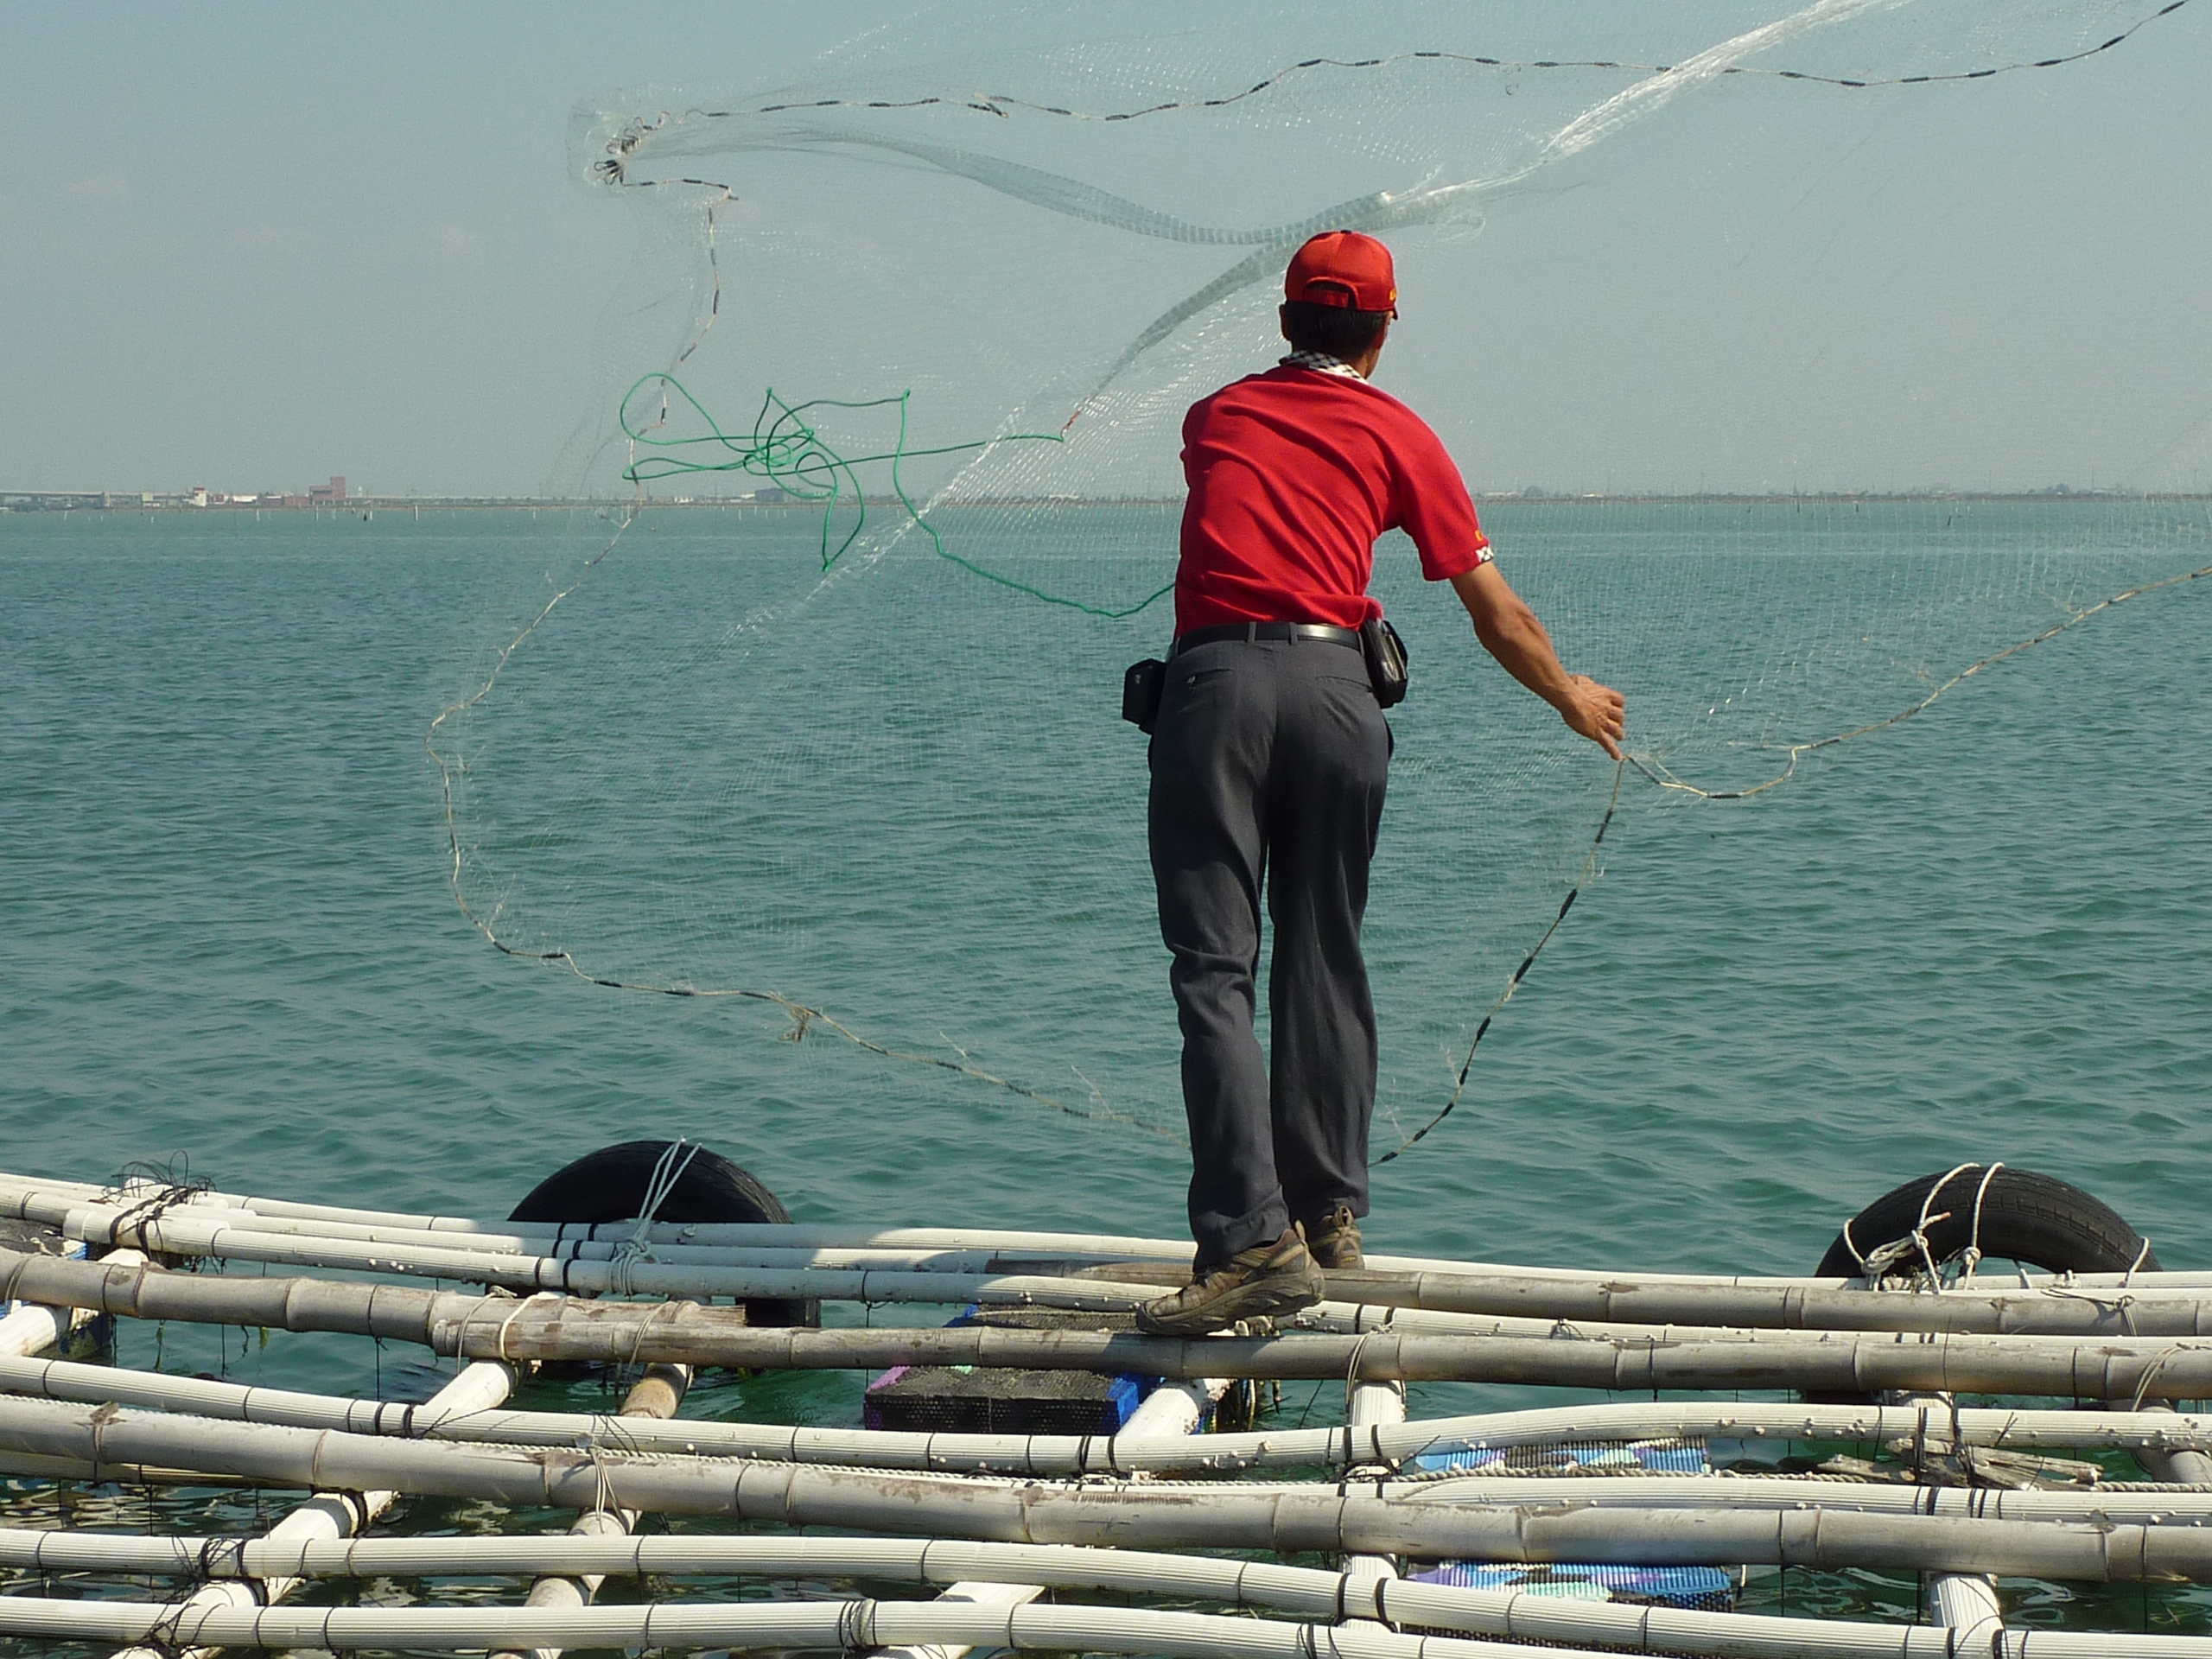 黄河渔民撒网图片图片